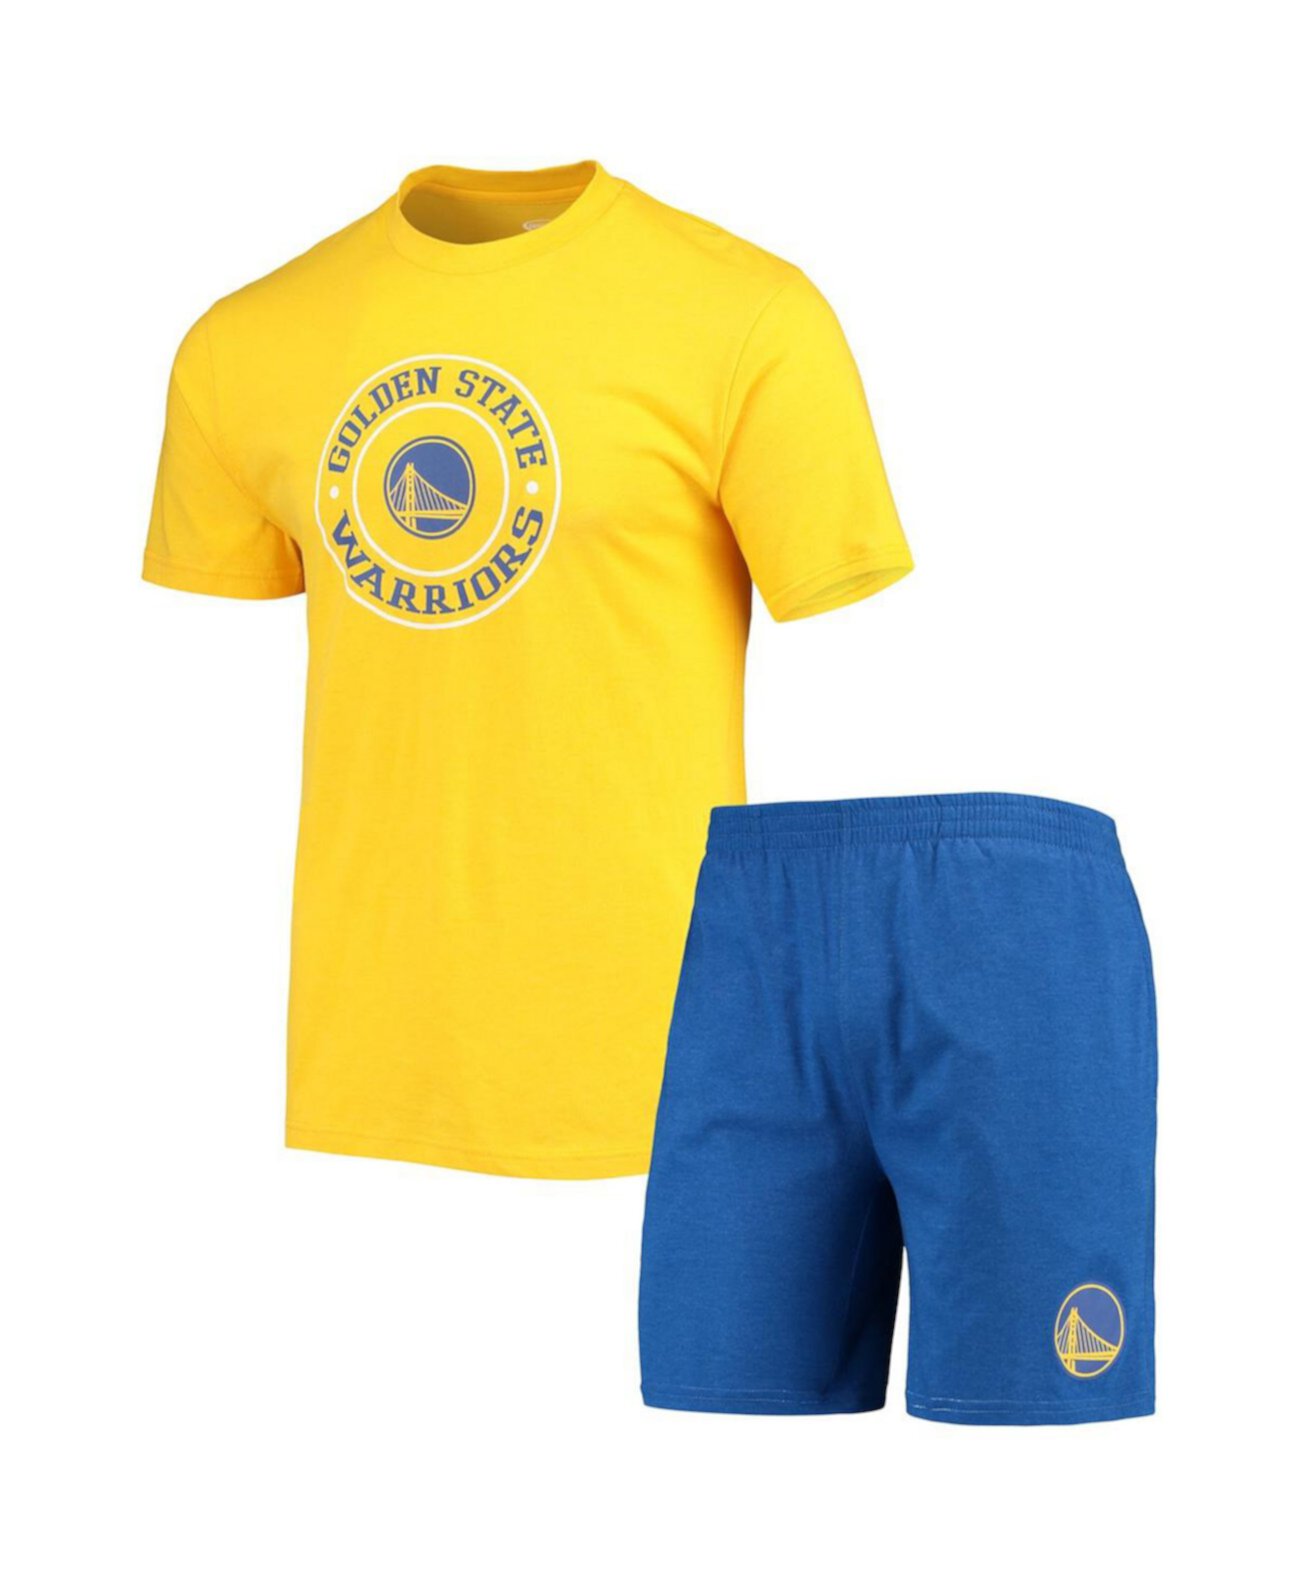 Мужской комплект для сна из футболки и шорт Golden State Warriors королевского и золотого цвета Concepts Sport